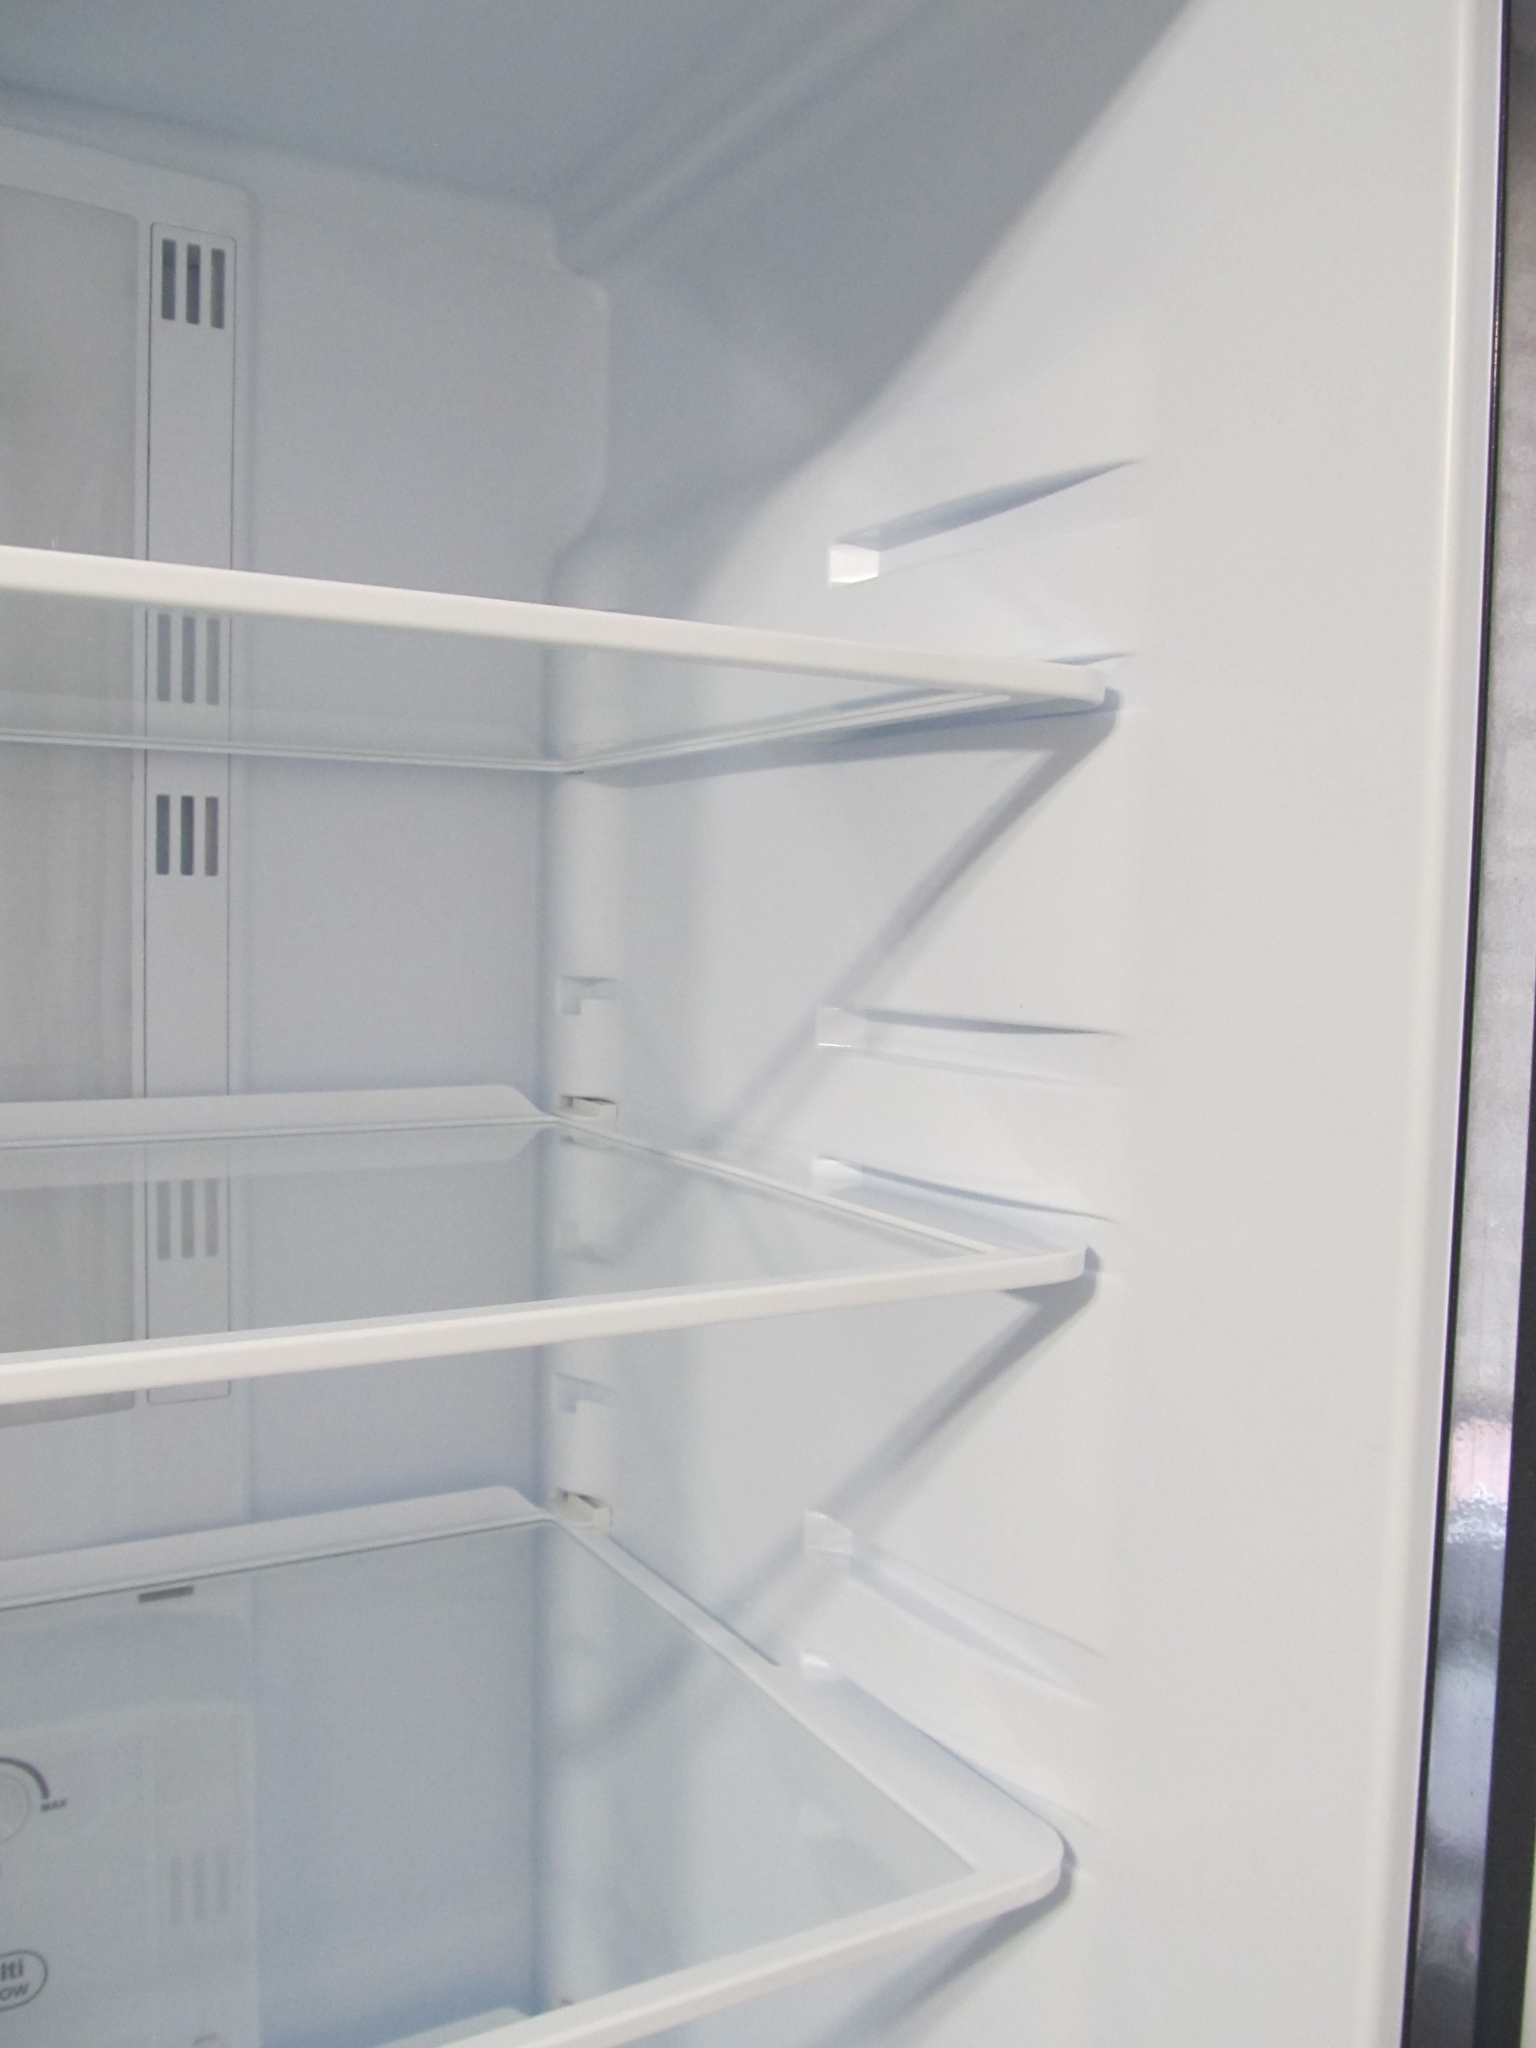 Холодильник pozis fnf 170